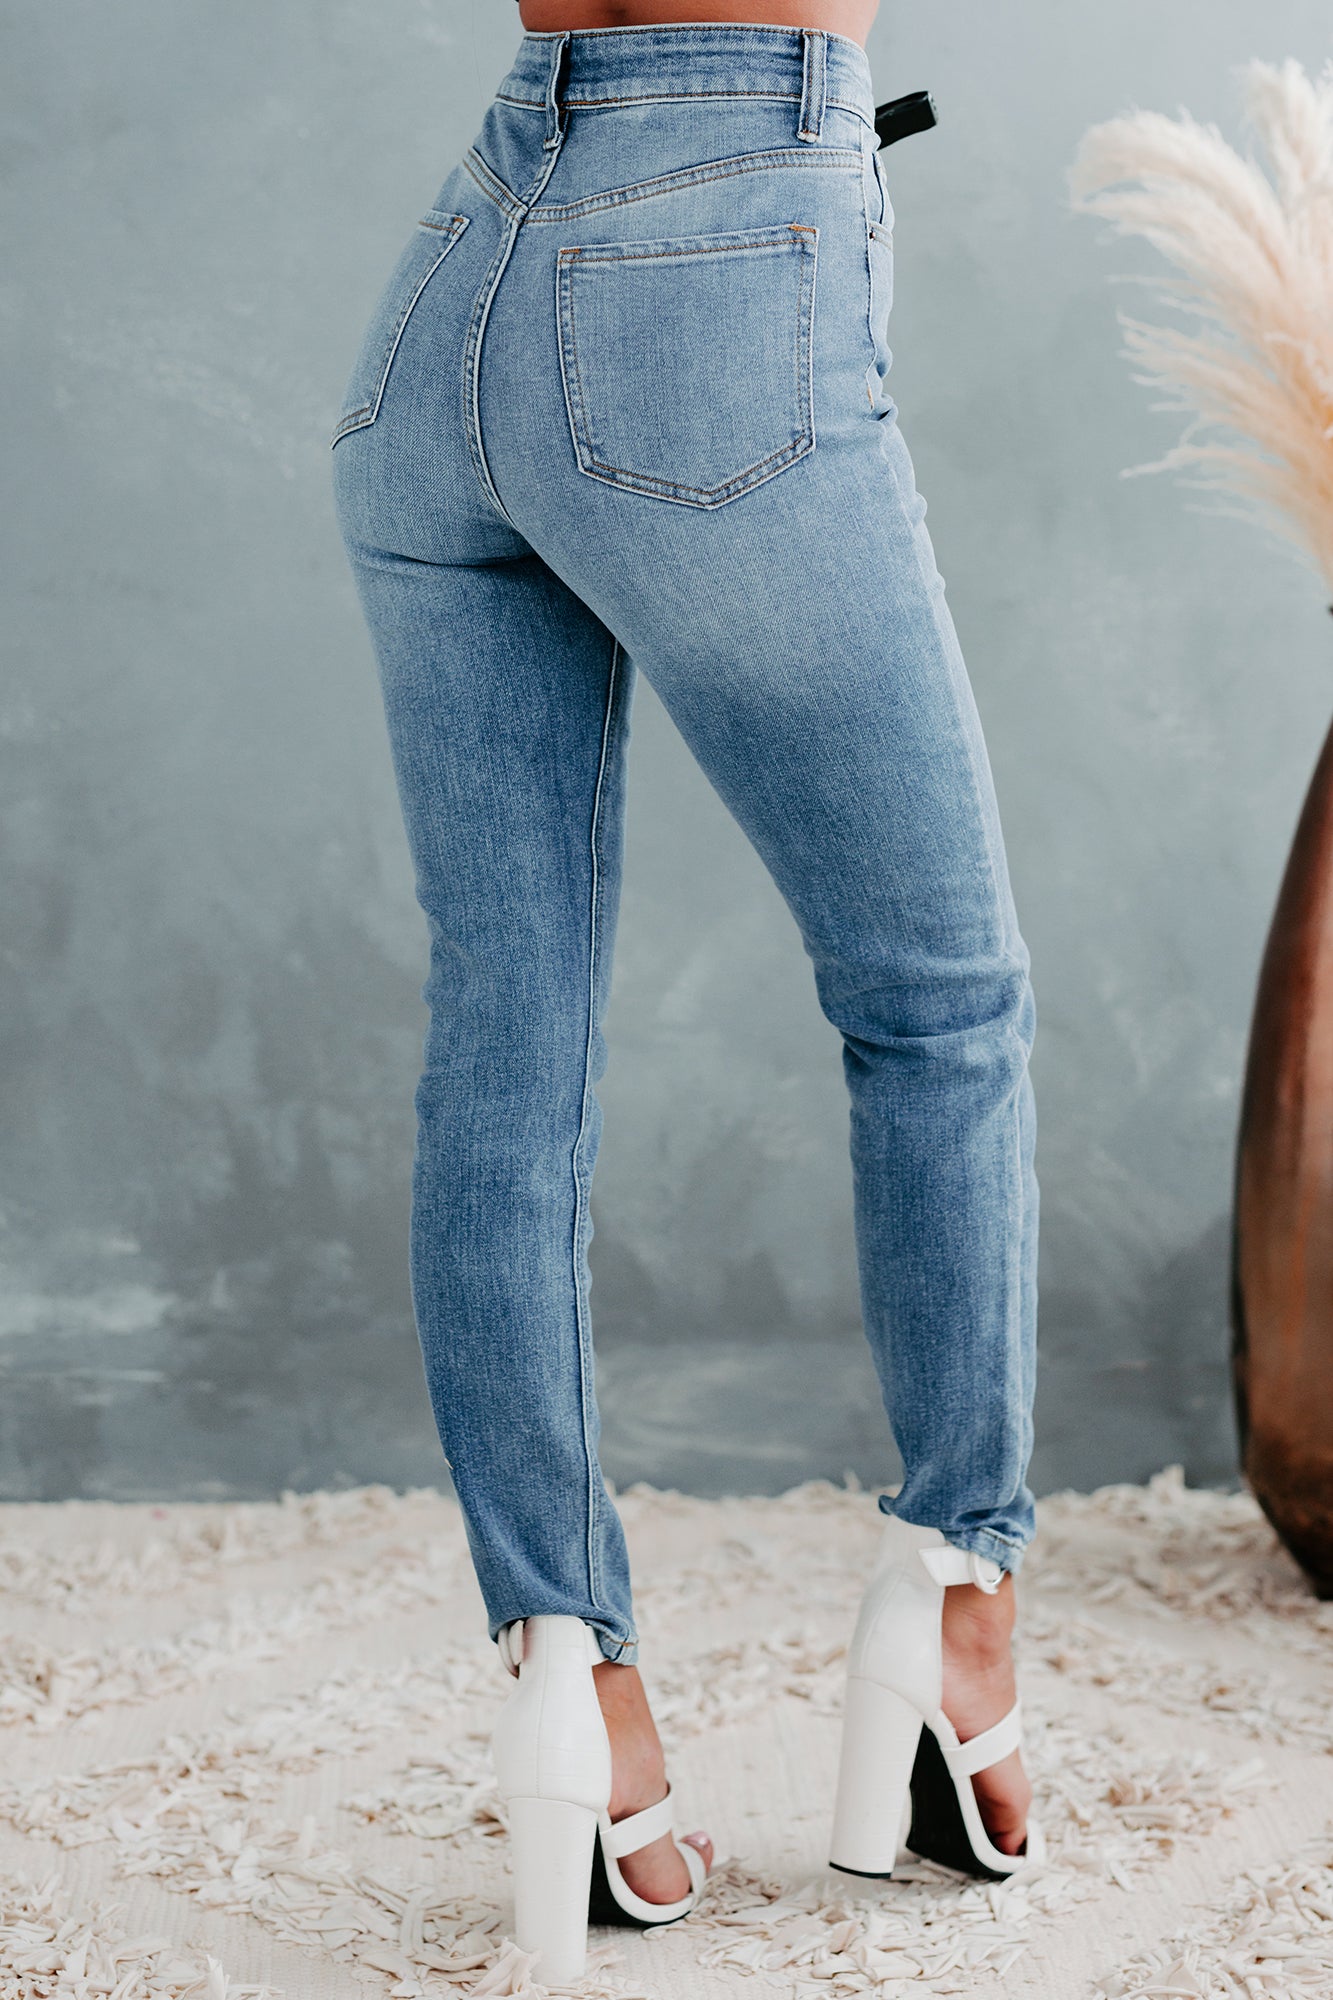 Topanga Sneak Peek 90's High Rise Cross-Fly Skinny Jeans (Medium Light) - NanaMacs